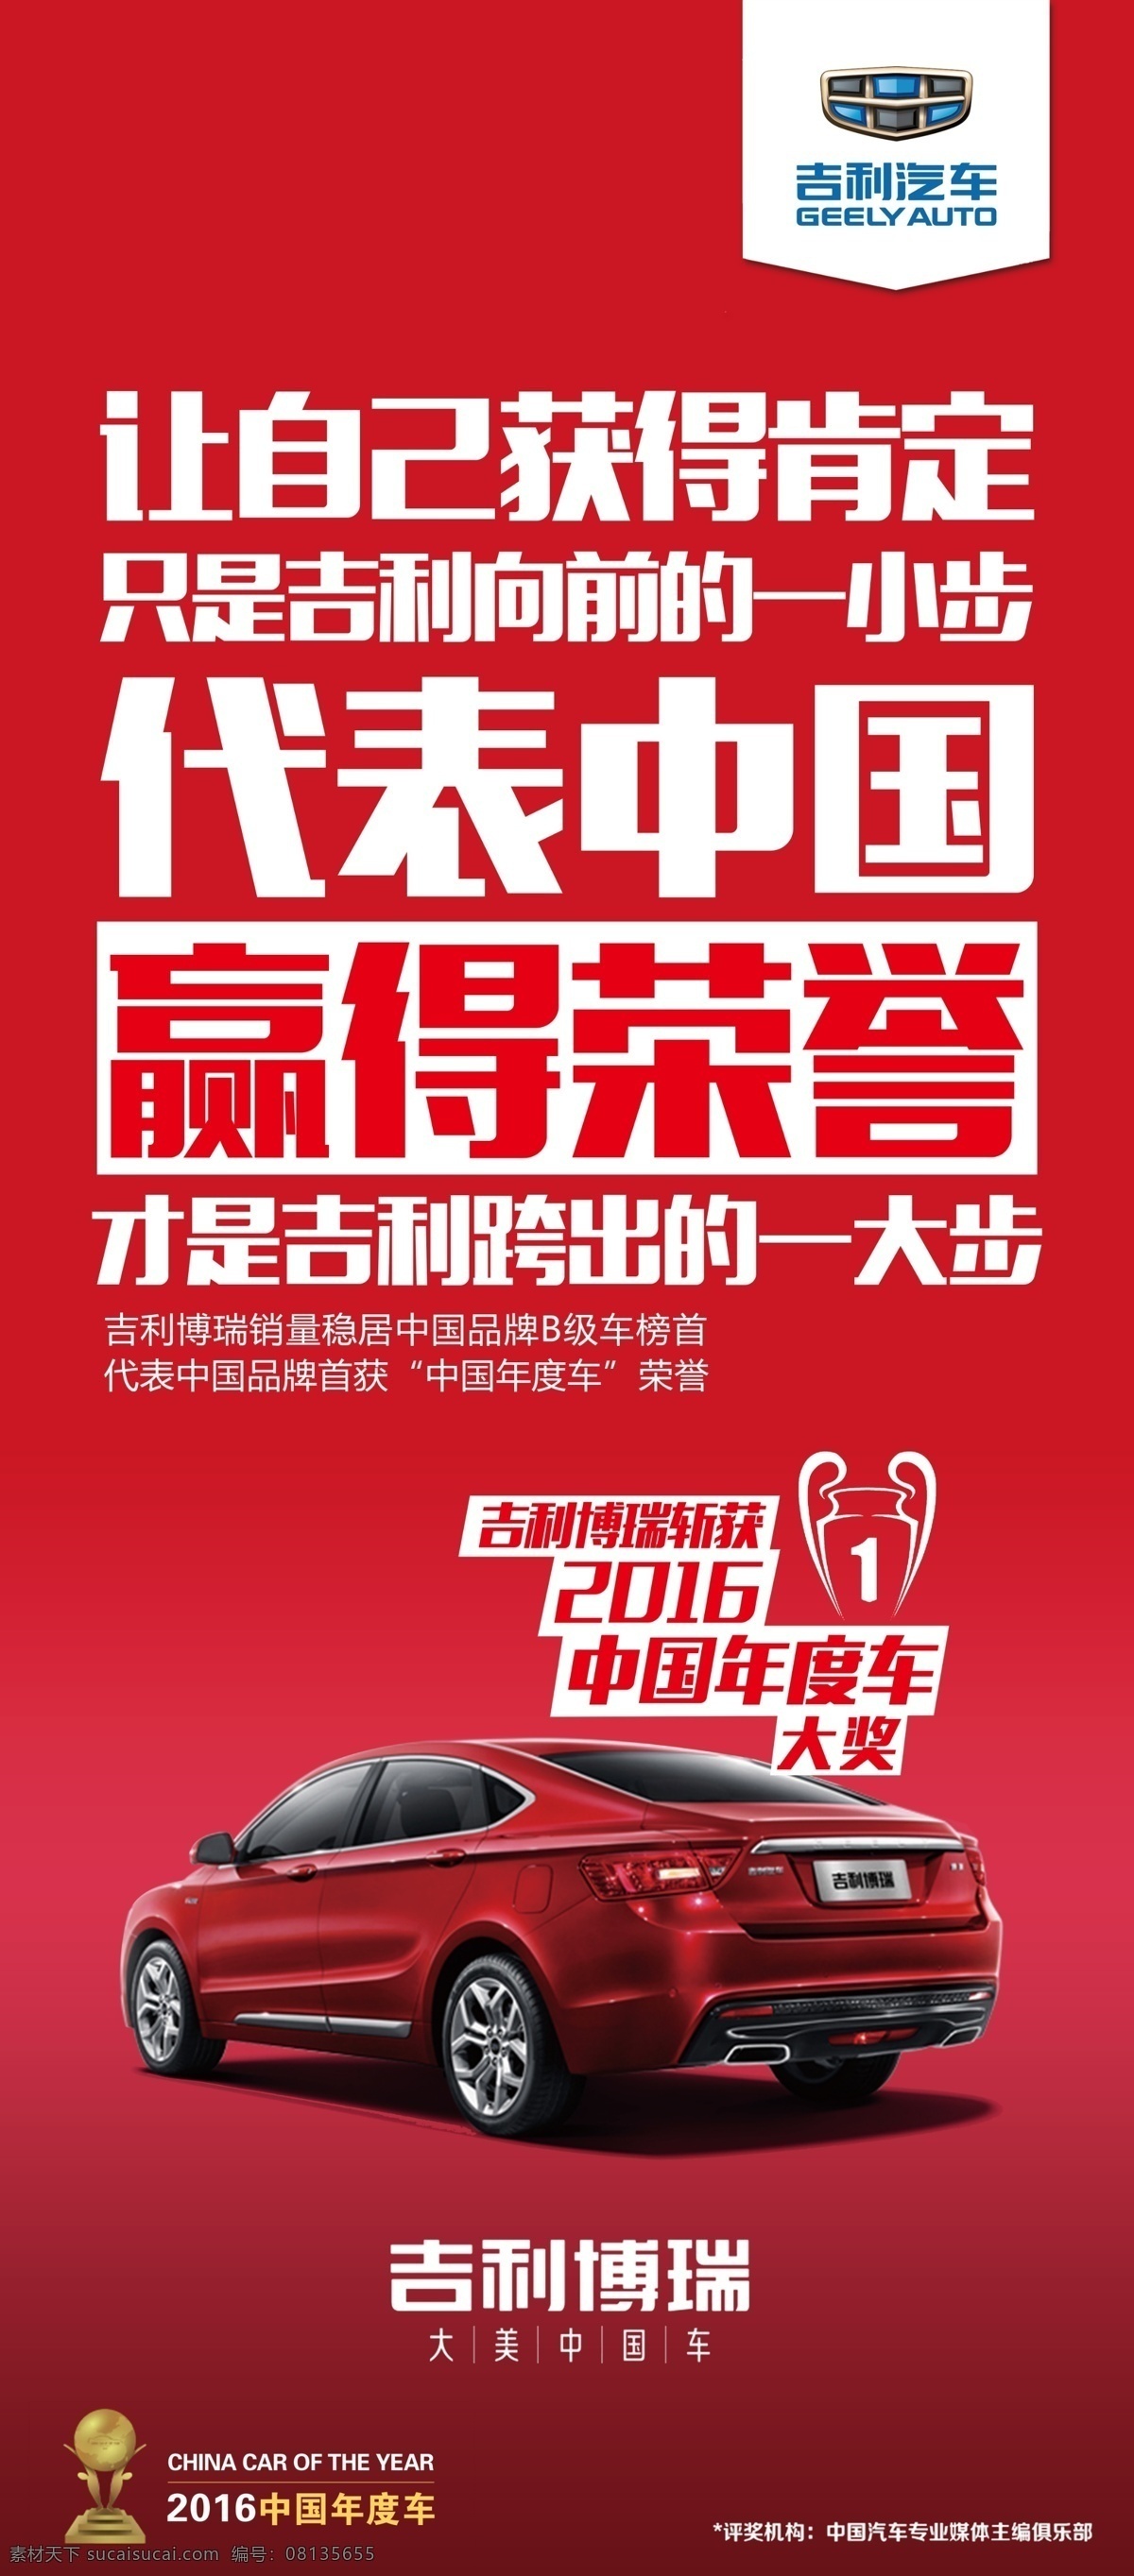 吉利 博瑞 汽车 中国 红海 报 中国红 海报 赢得 荣誉 奖杯 b级